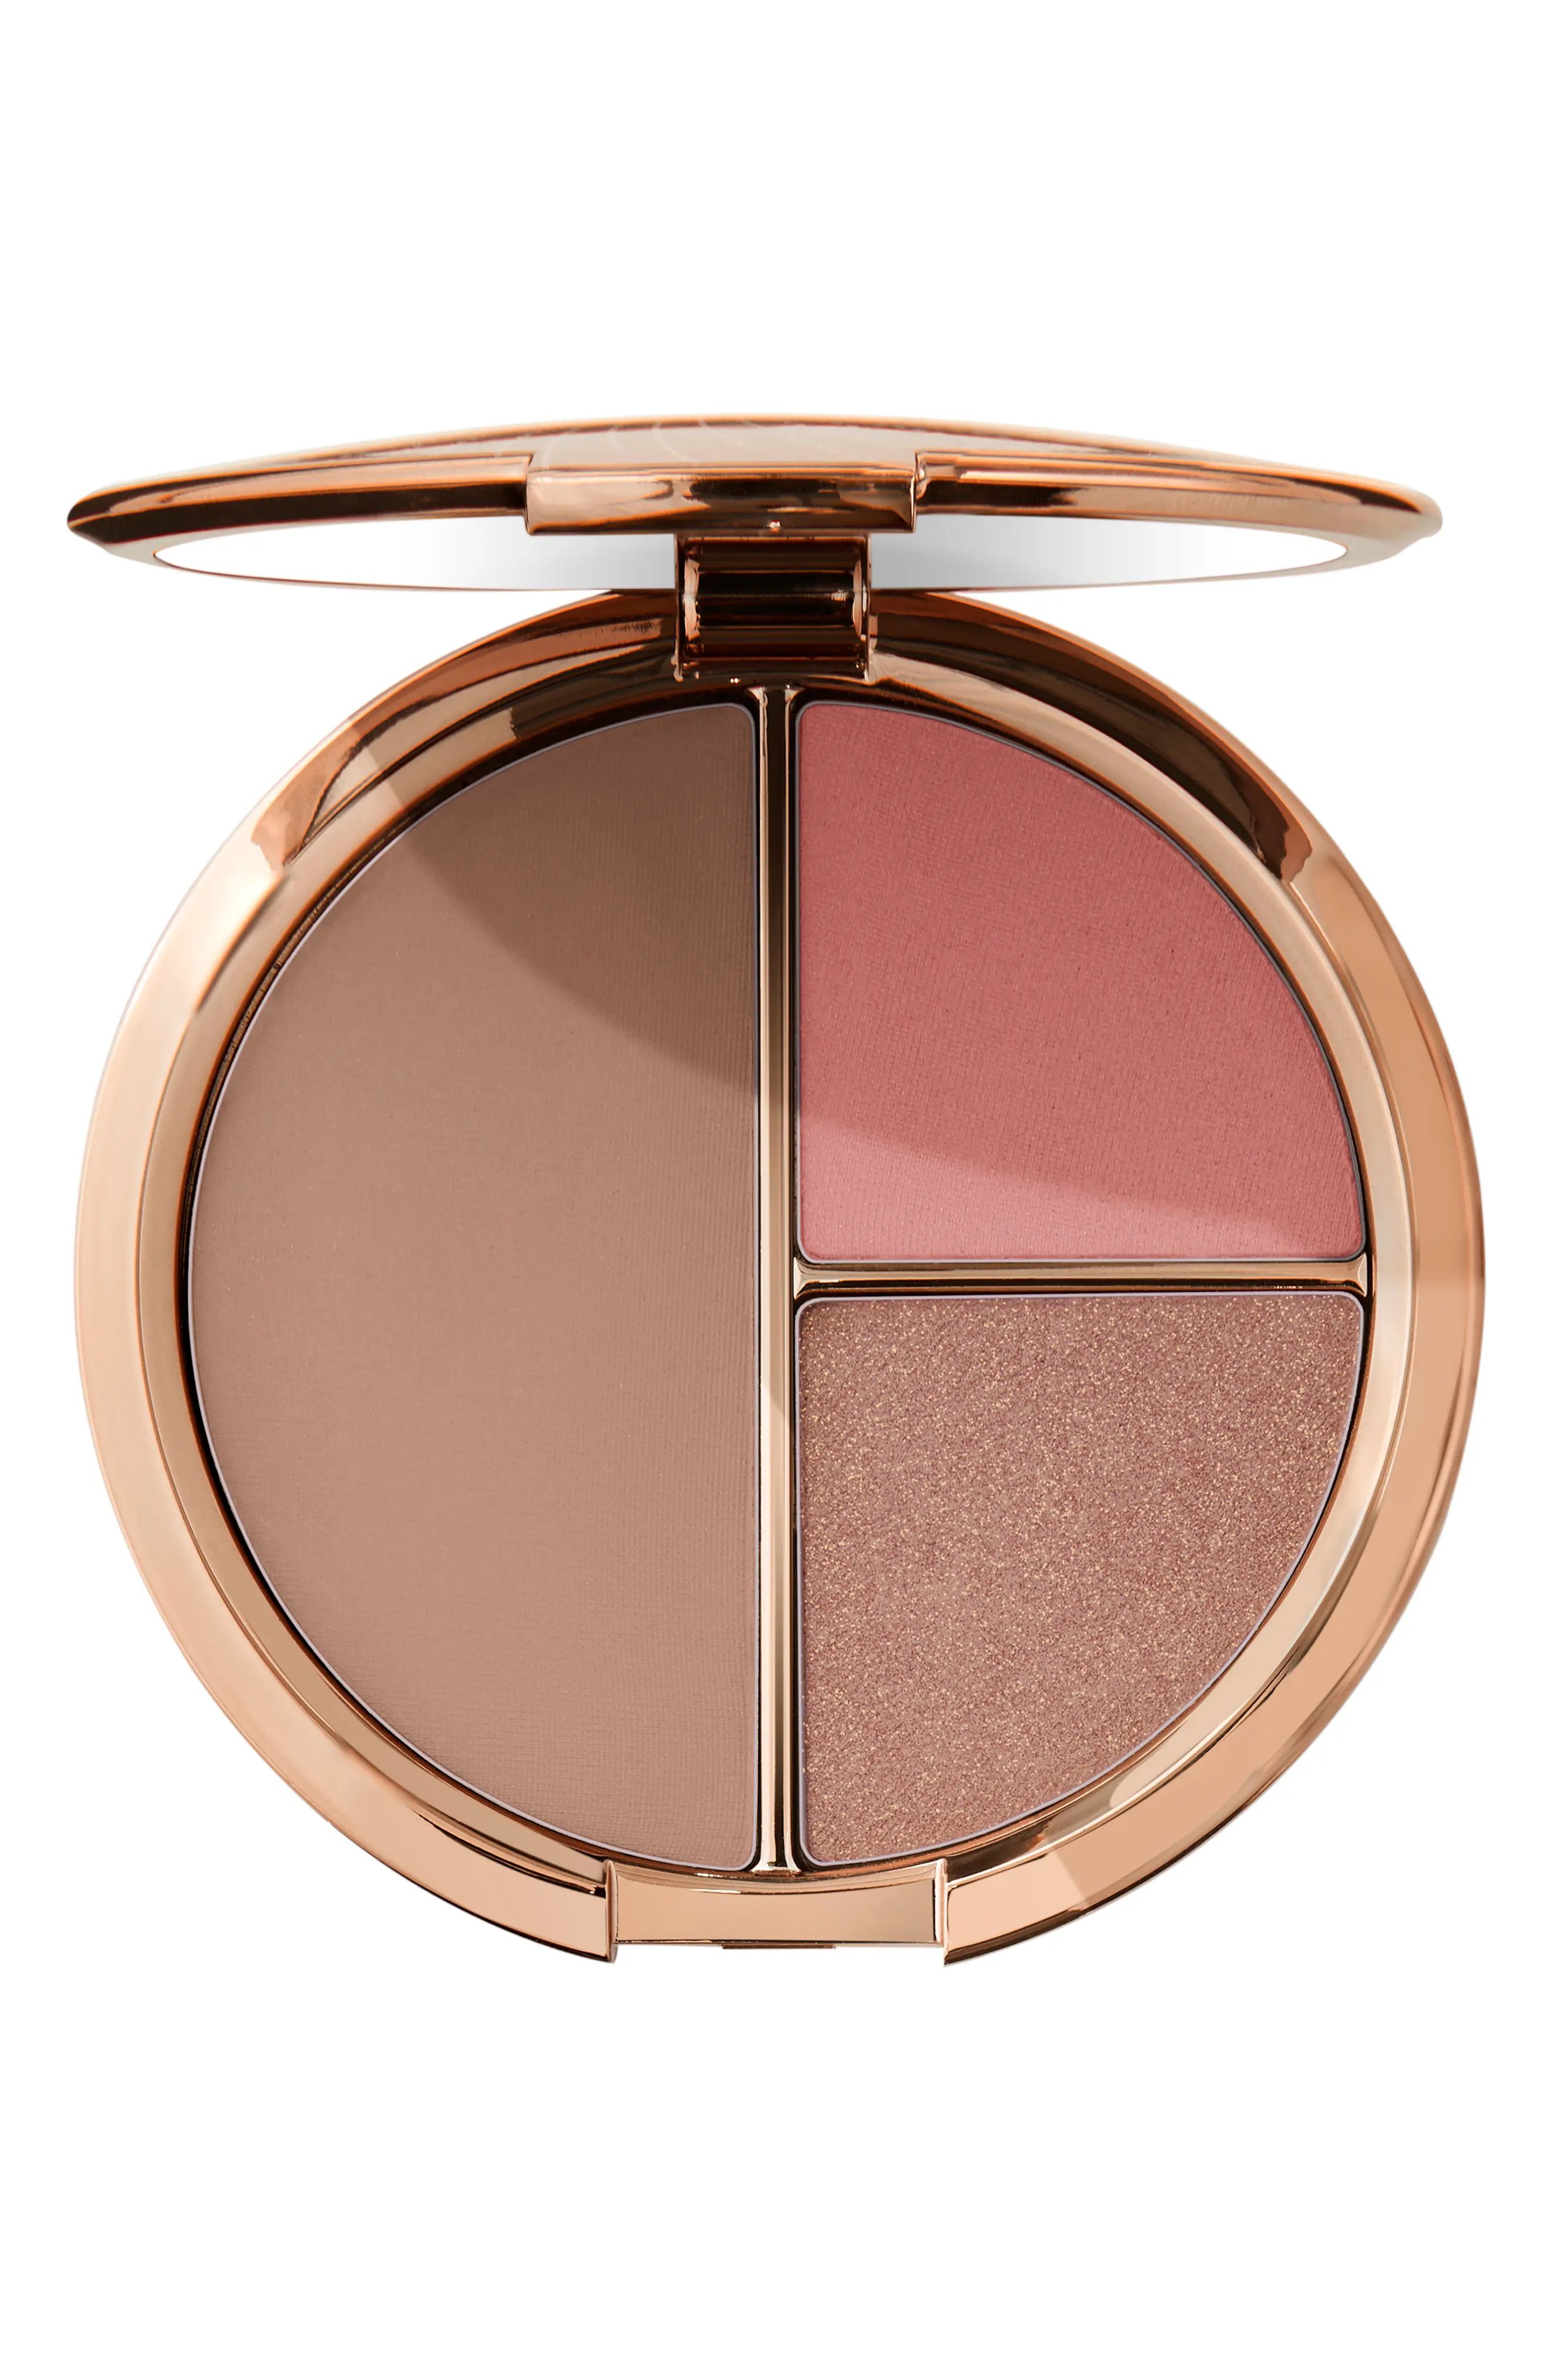 Bobbi Brown Face & Cheek Blush & Bronzer Palette - Medium | Nordstrom